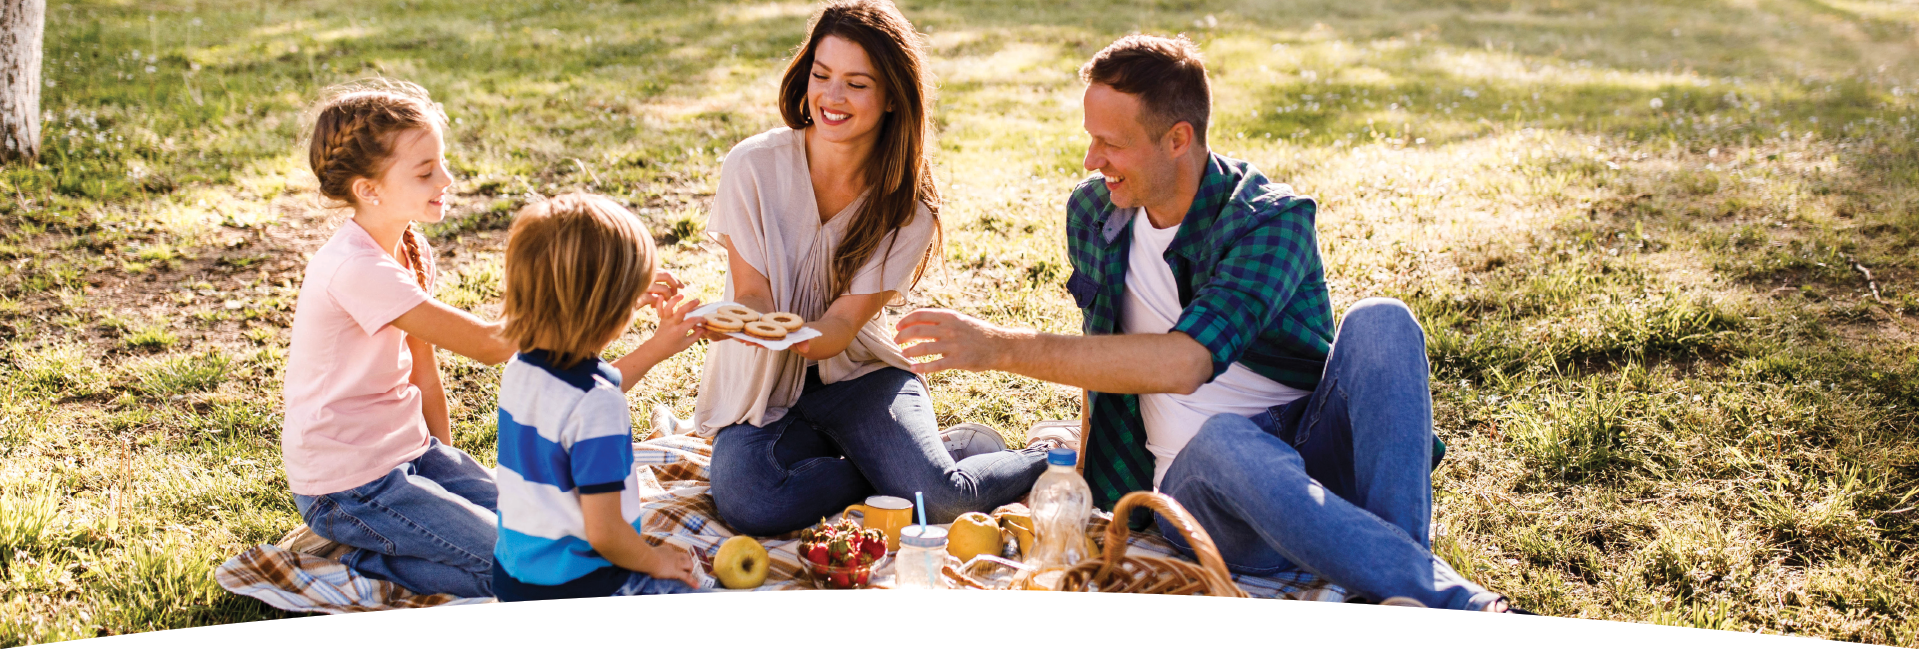 Atsipalaidavusi šeima gamtoje pietauja ir gerai leidžia laiką, nes jaučiasi saugūs. 